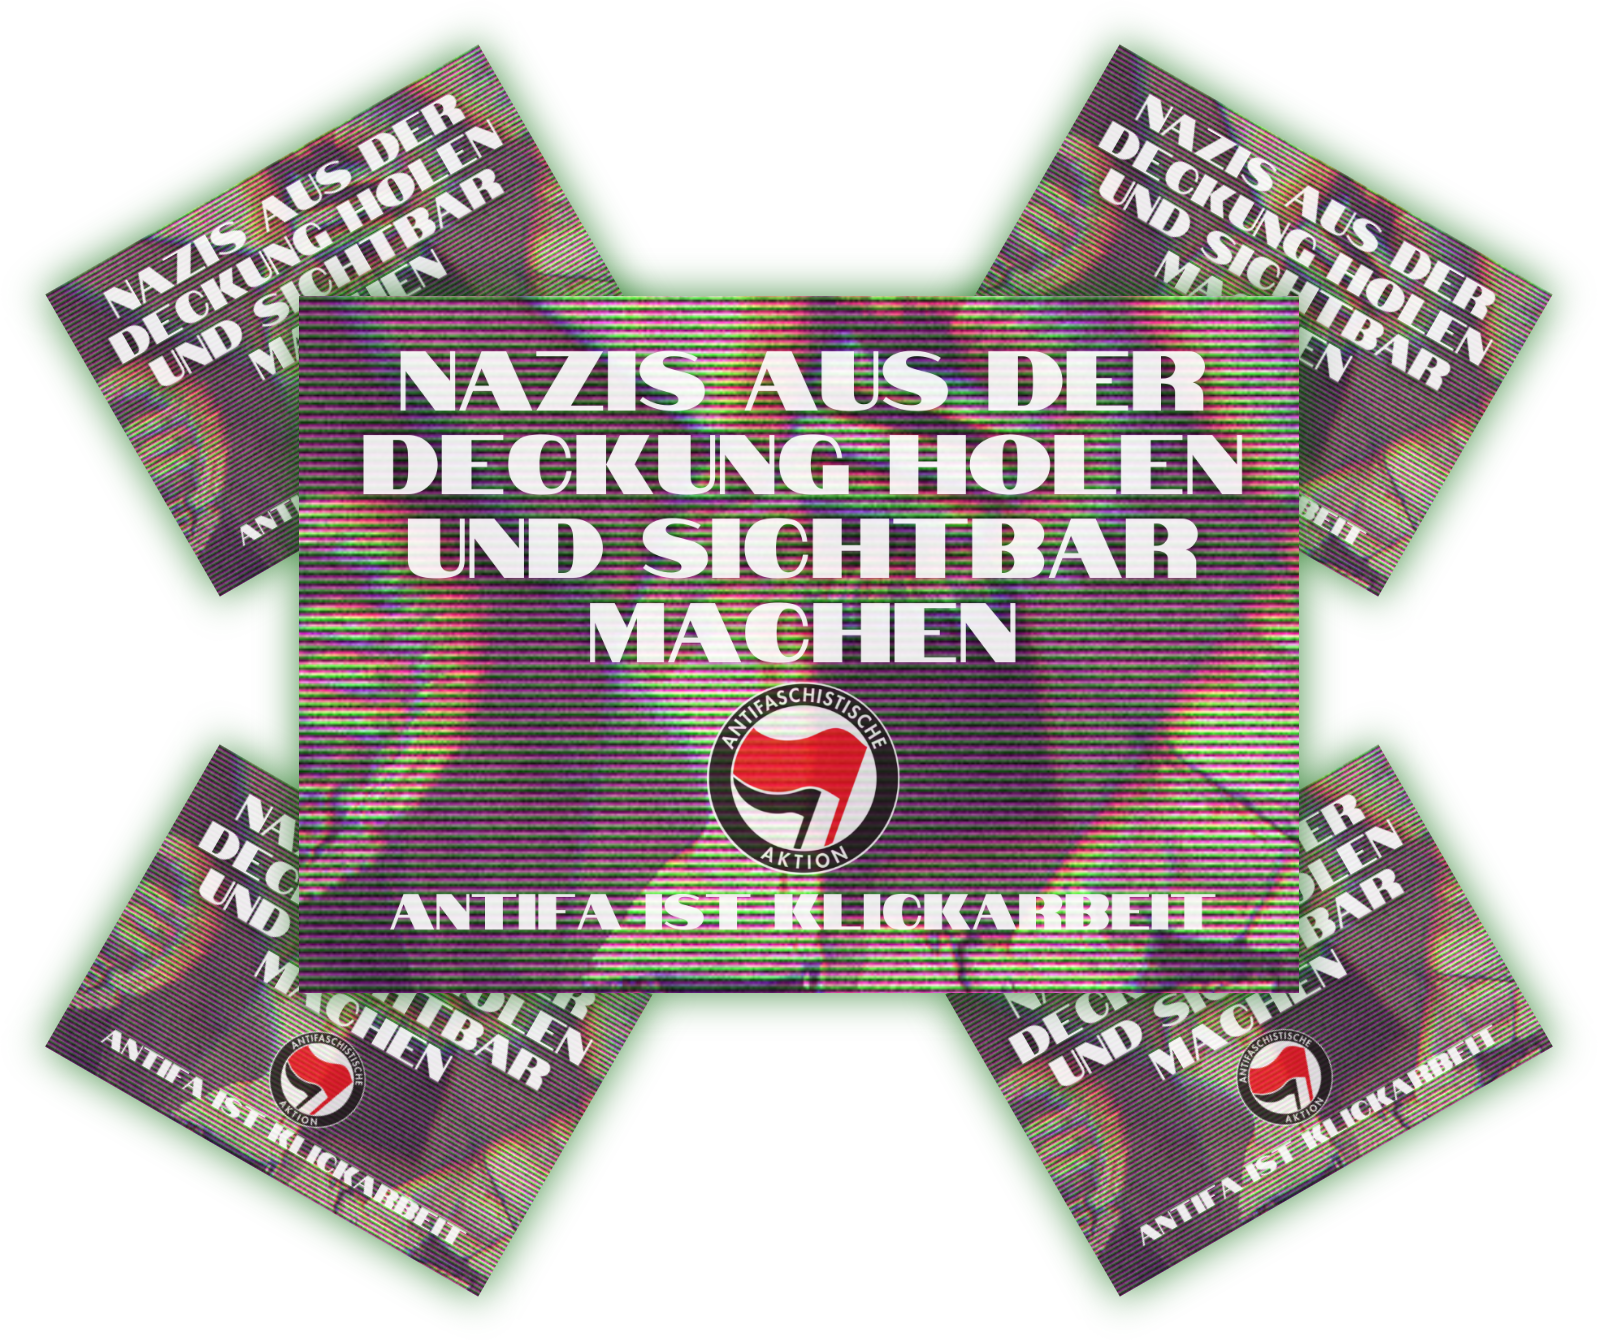 Nazis aus der Deckung holen | Aufkleber